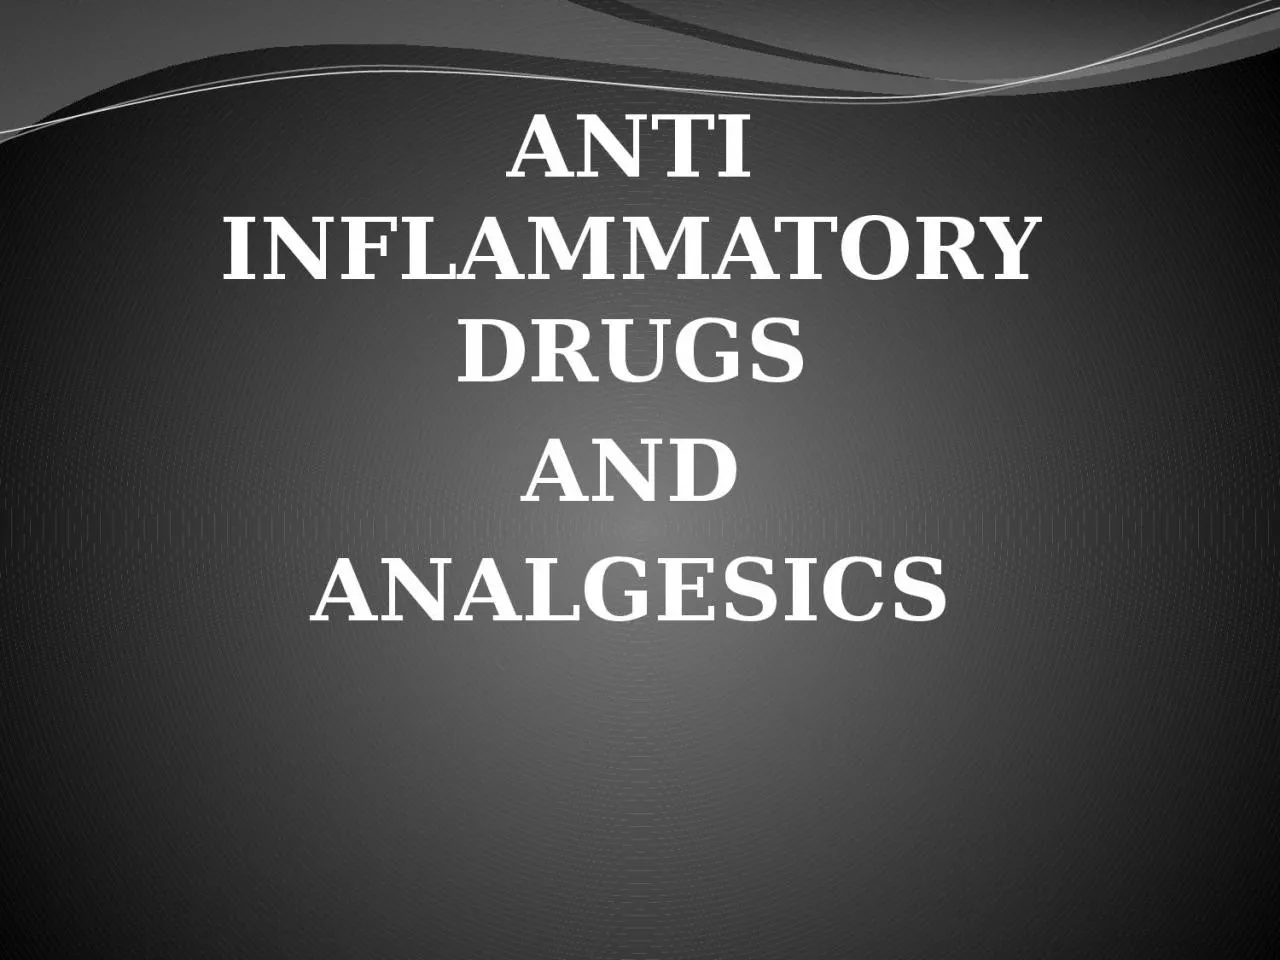 ANTI INFLAMMATORY DRUGS AND